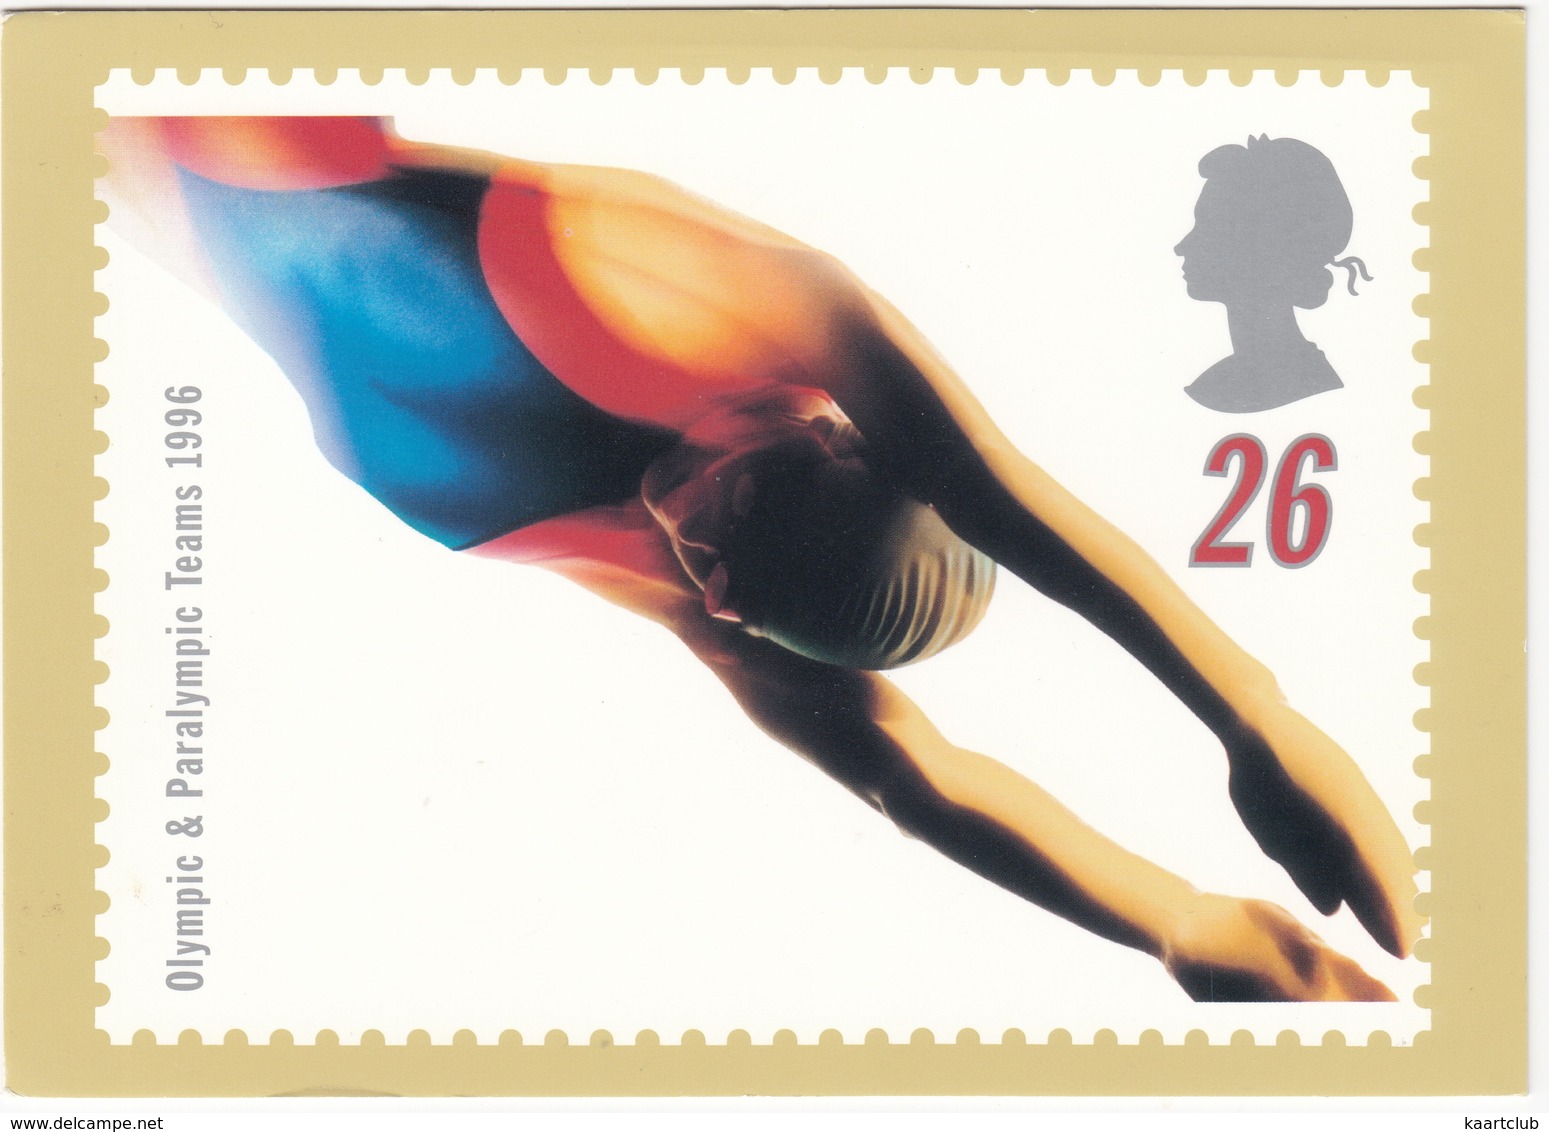 'SWIM' - Swifter, Higher, Stronger - Olympic & Paralympic Teams 1996  (26p Stamp) -  1996 - (U.K.) - Postzegels (afbeeldingen)